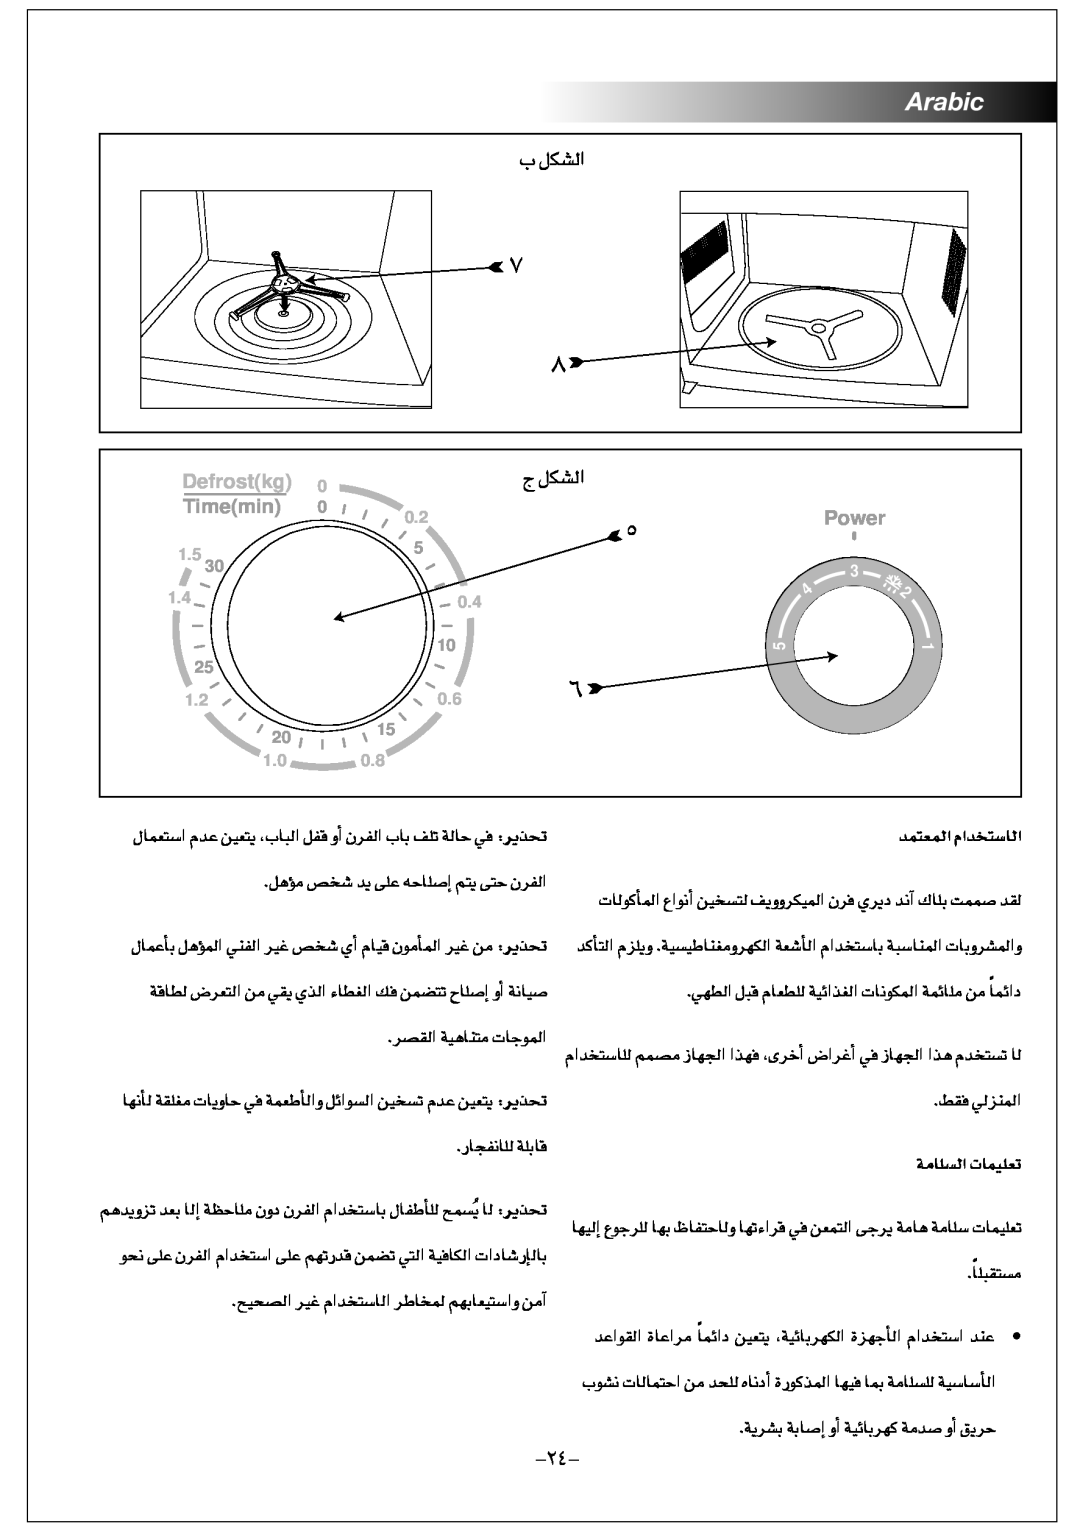 Black & Decker MY2000PSA manual Arabic, Defrostkg, Timemin, Power, áeÉ∏ùdG äÉª«∏J, óªàªdG ΩGóîàSÉdG 